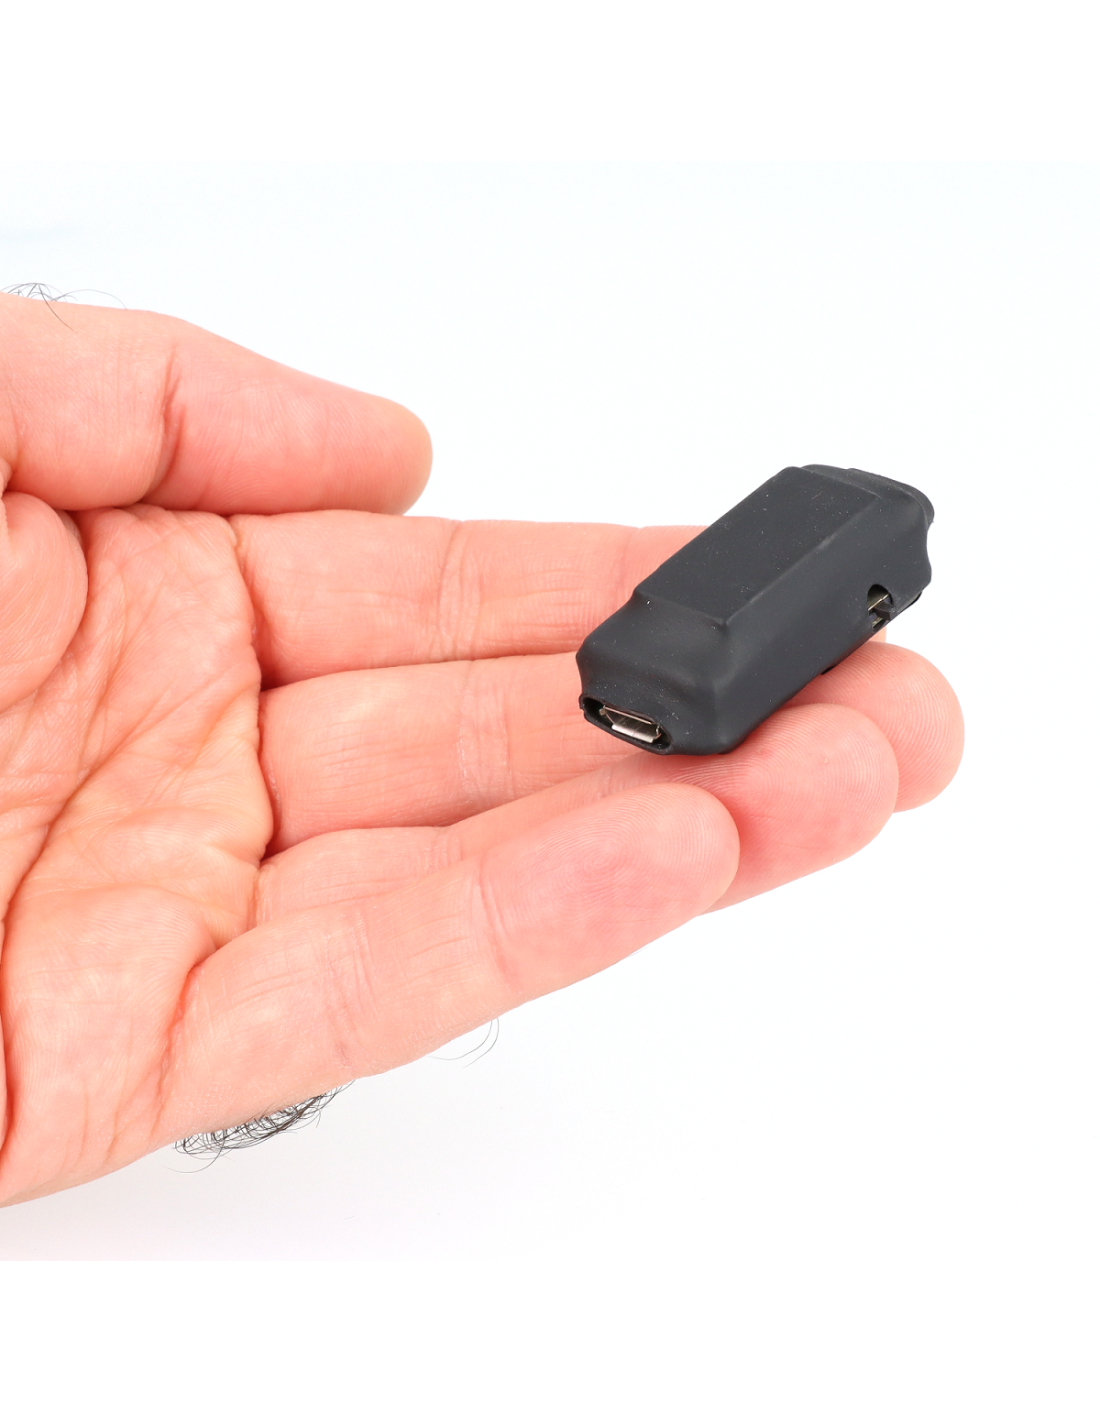 GPS Logger miniature - traceur GPS sans carte sim - Hd Protech